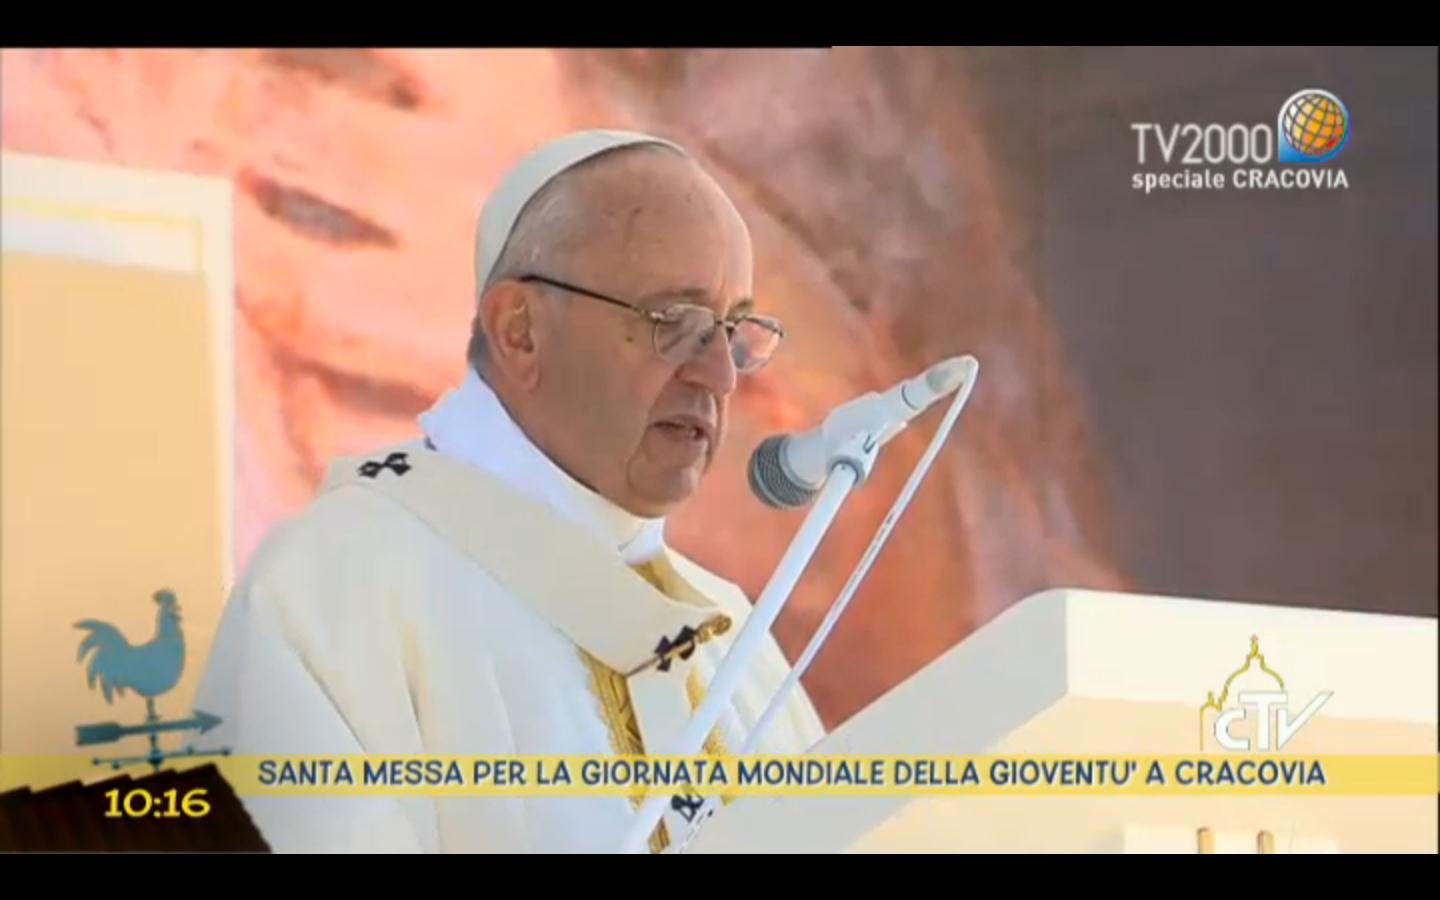 Papa Francesco ai giovani di tutto il mondo: "Potranno giudicarvi sognatori,non scoraggiatevi, annunciate una nuova umanità"